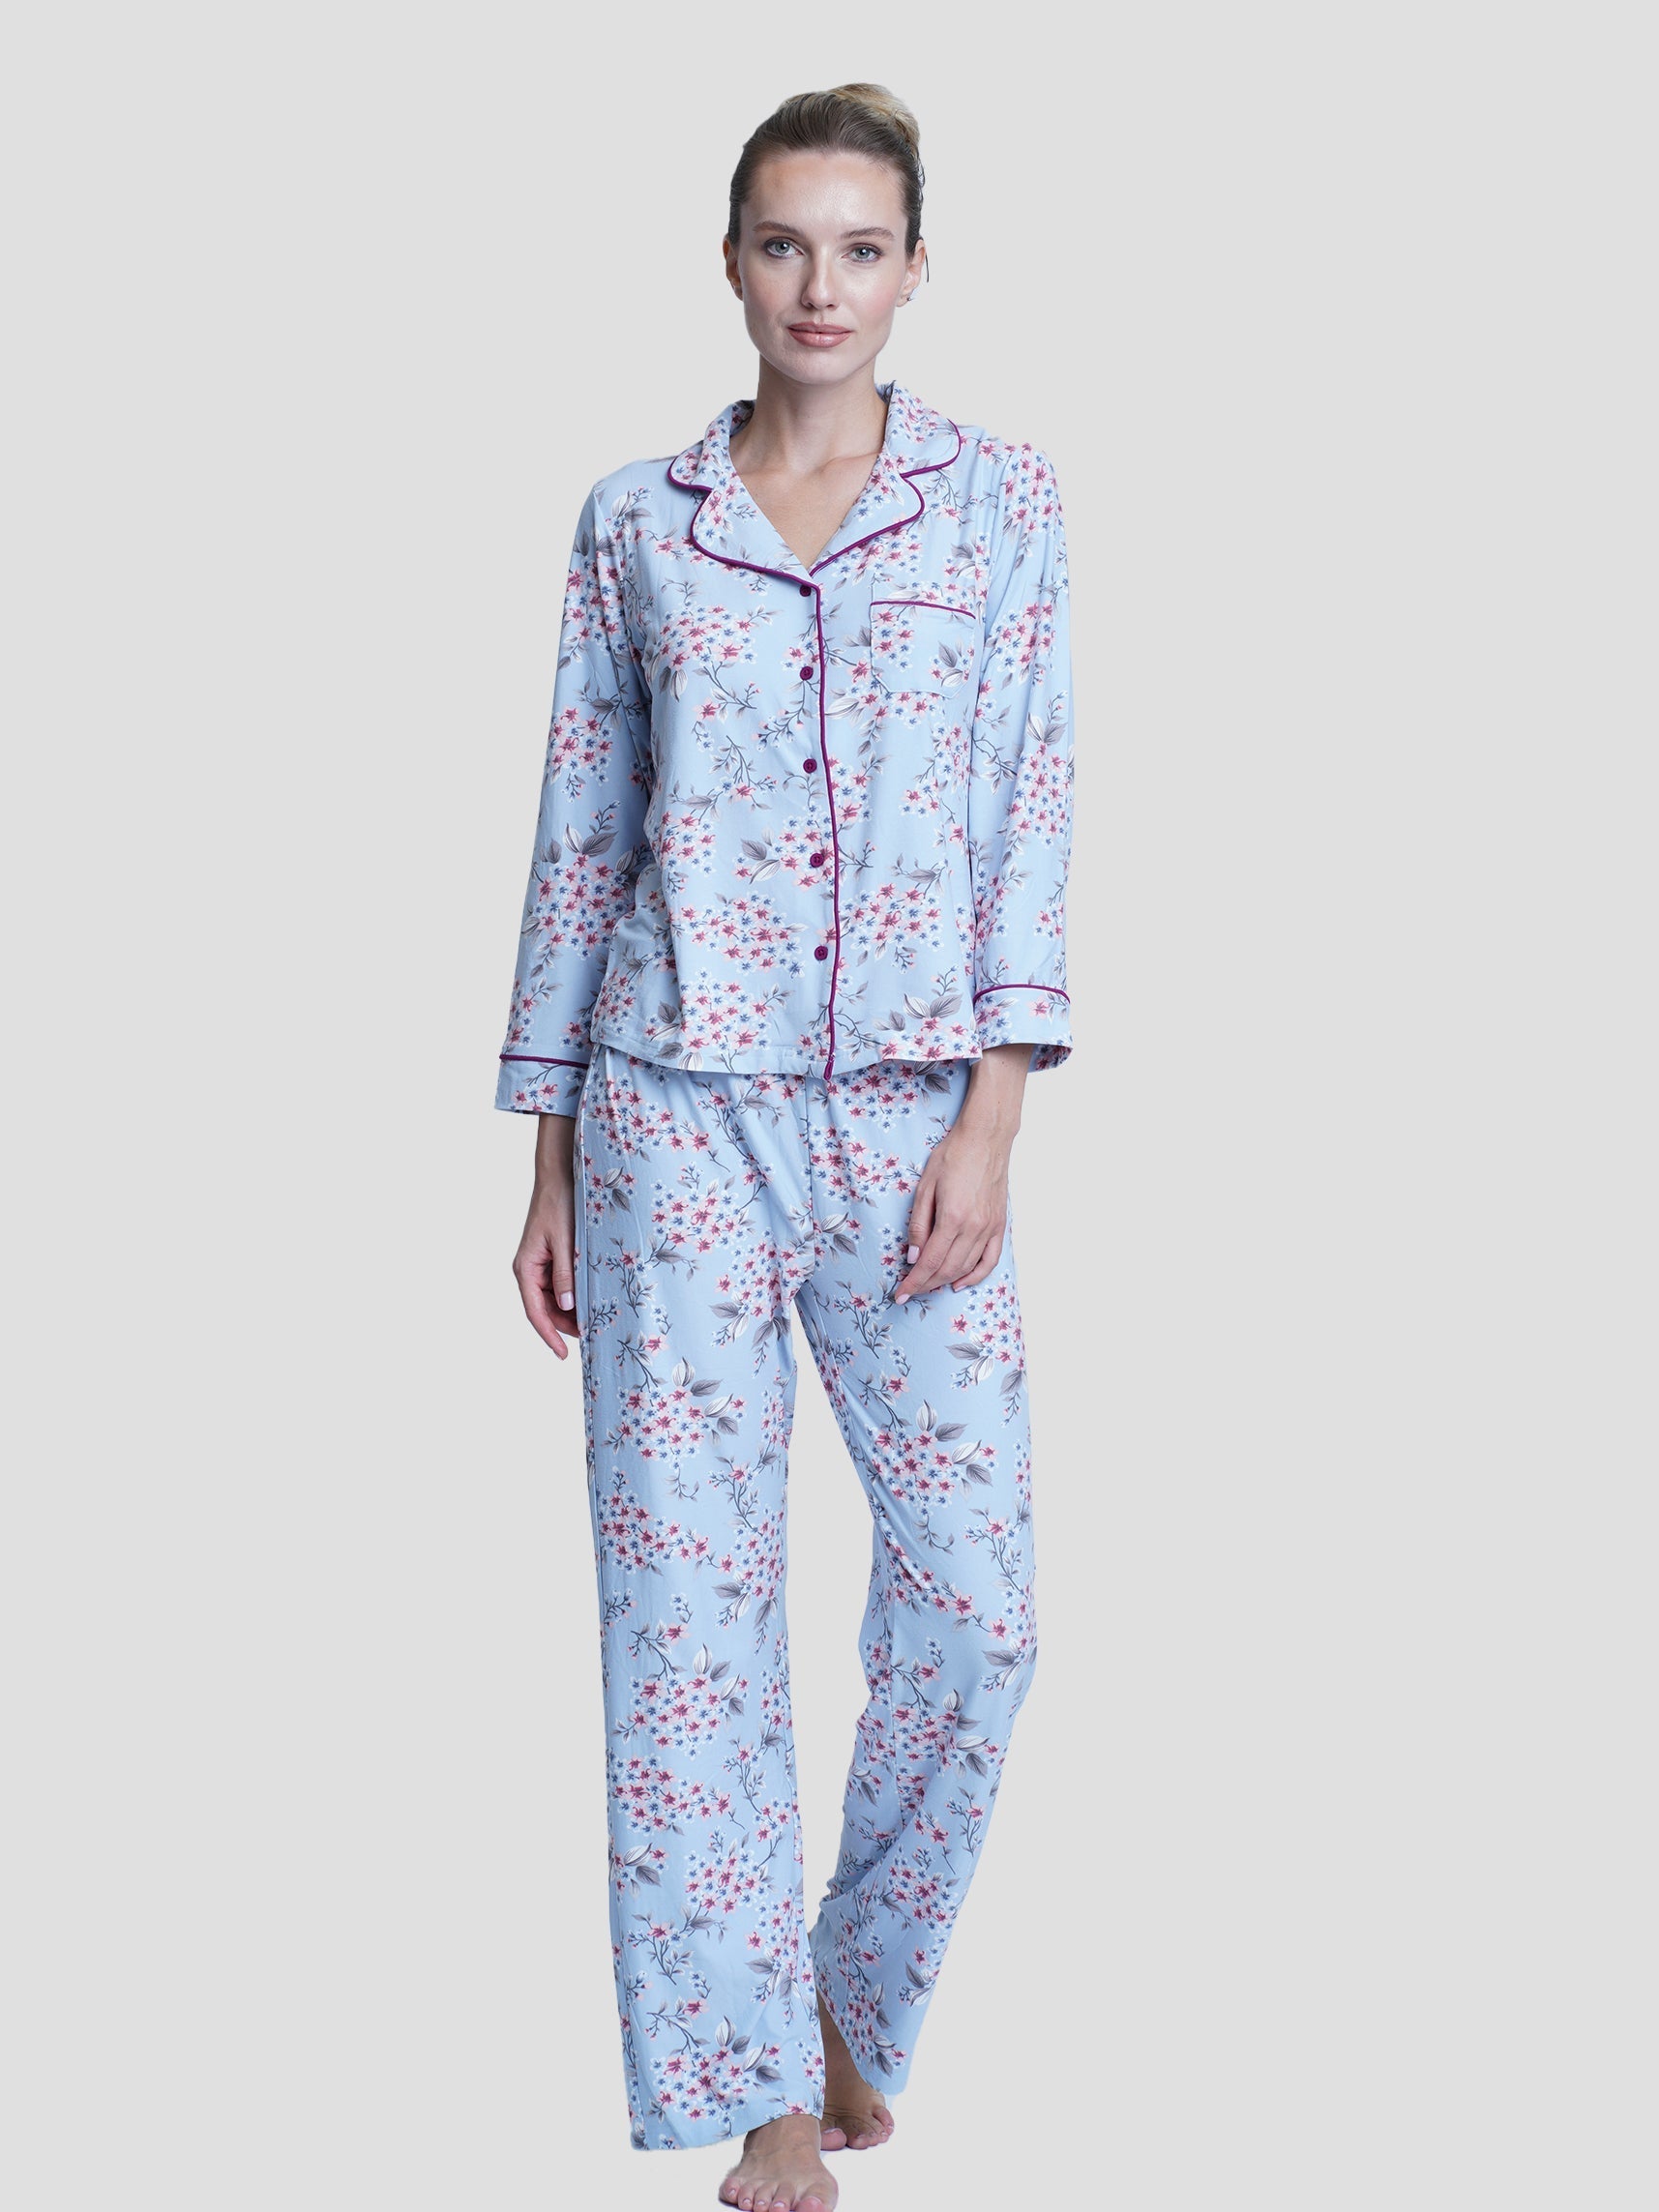 Women Notch-Collar Floral Print Top & Pants Pyjama Set - inteblu